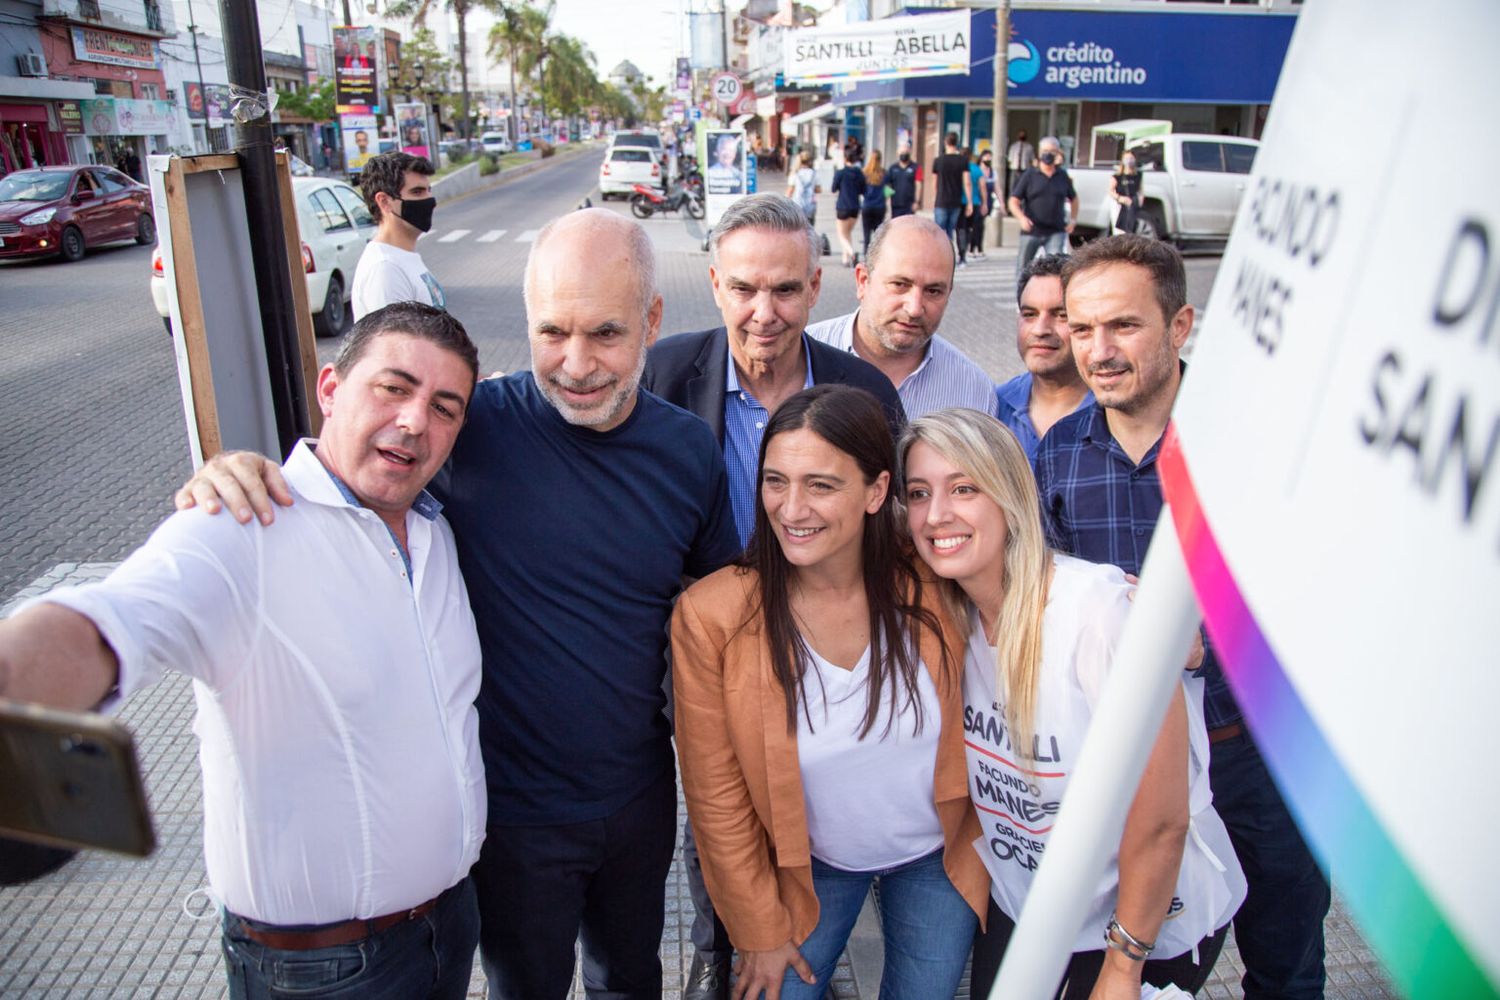 Rodríguez Larreta de campaña en Campana para apoyar a la candidata local de Juntos